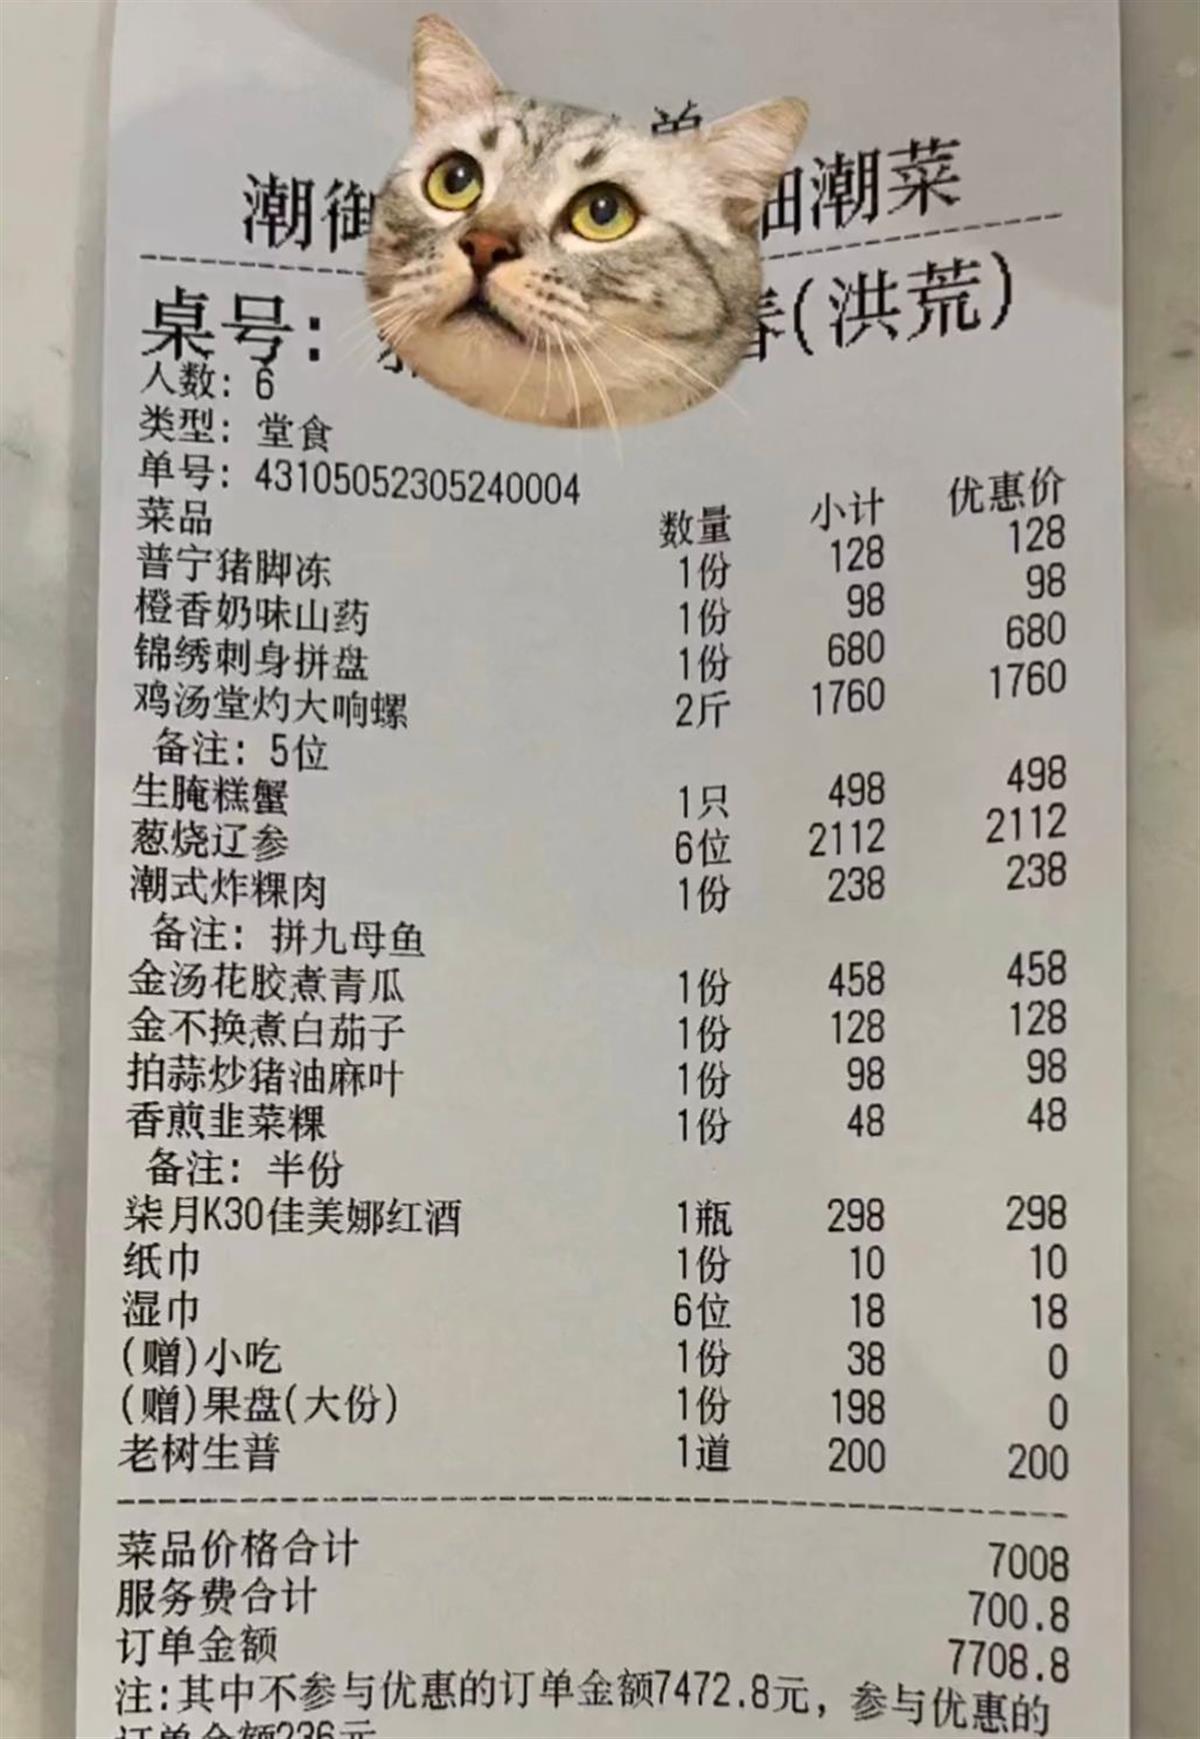 市场监管部门:餐厅收取服务费时需要在菜单上明码标价